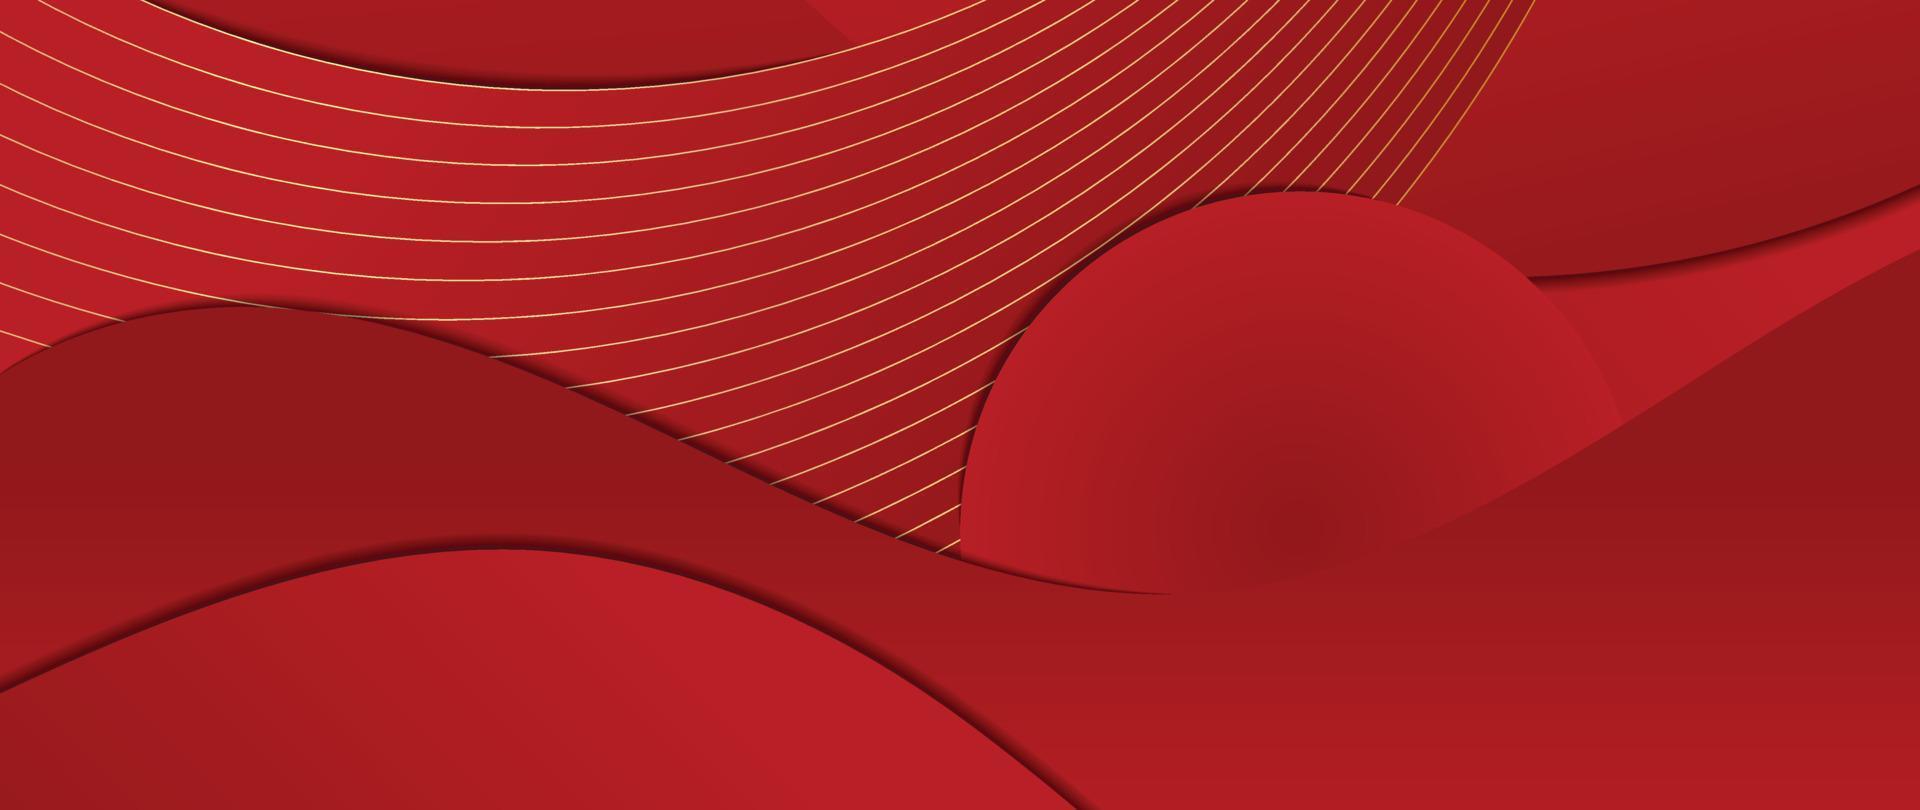 vecteur de fond de modèle de style de luxe oriental japonais et chinois. superposition de motif de ligne dorée courbe abstraite avec fond rouge dégradé. illustration de conception d'art pour papier peint, carte, affiche.